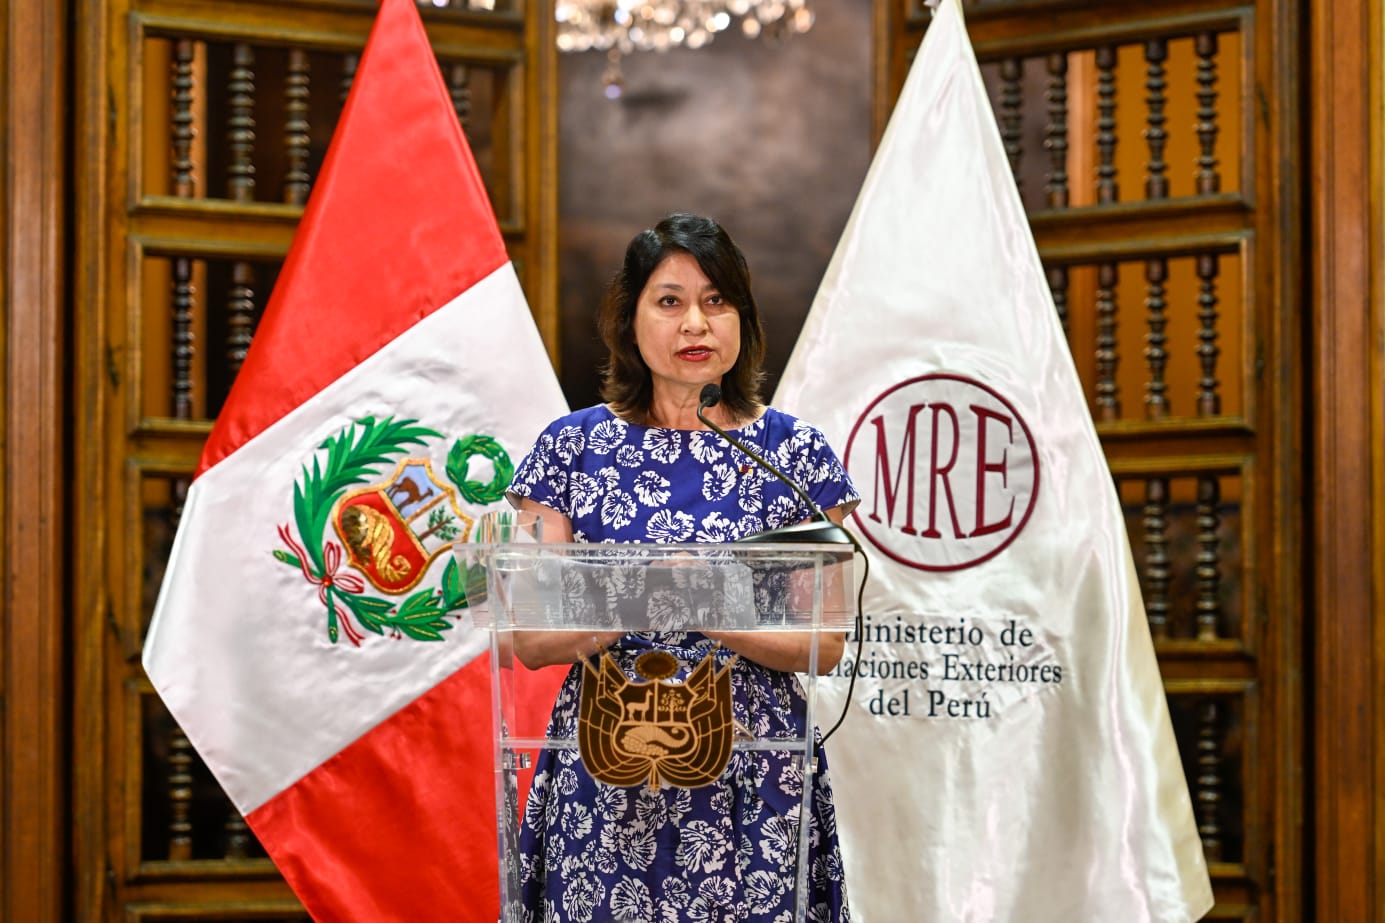 Perú rompe relaciones con México y le dan 72 horas a Canciller mexicano para abandonar suelo peruano